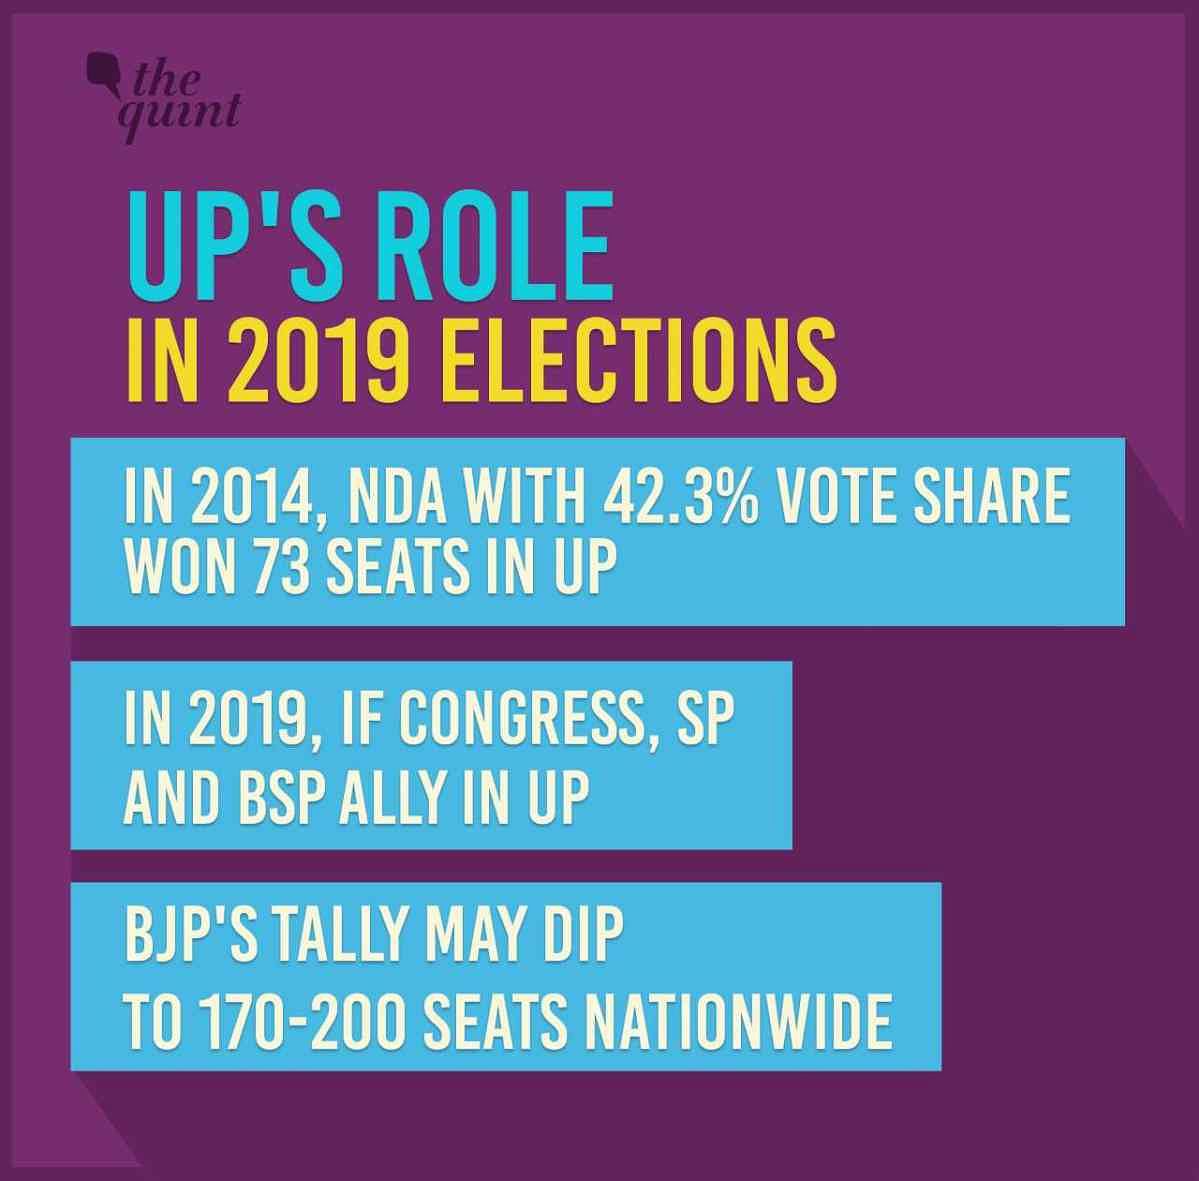 2014 लोकसभा चुनाव में मोदी को सबसे ज्यादा सीटें देश के 12 बड़े राज्यों में मिली थीं